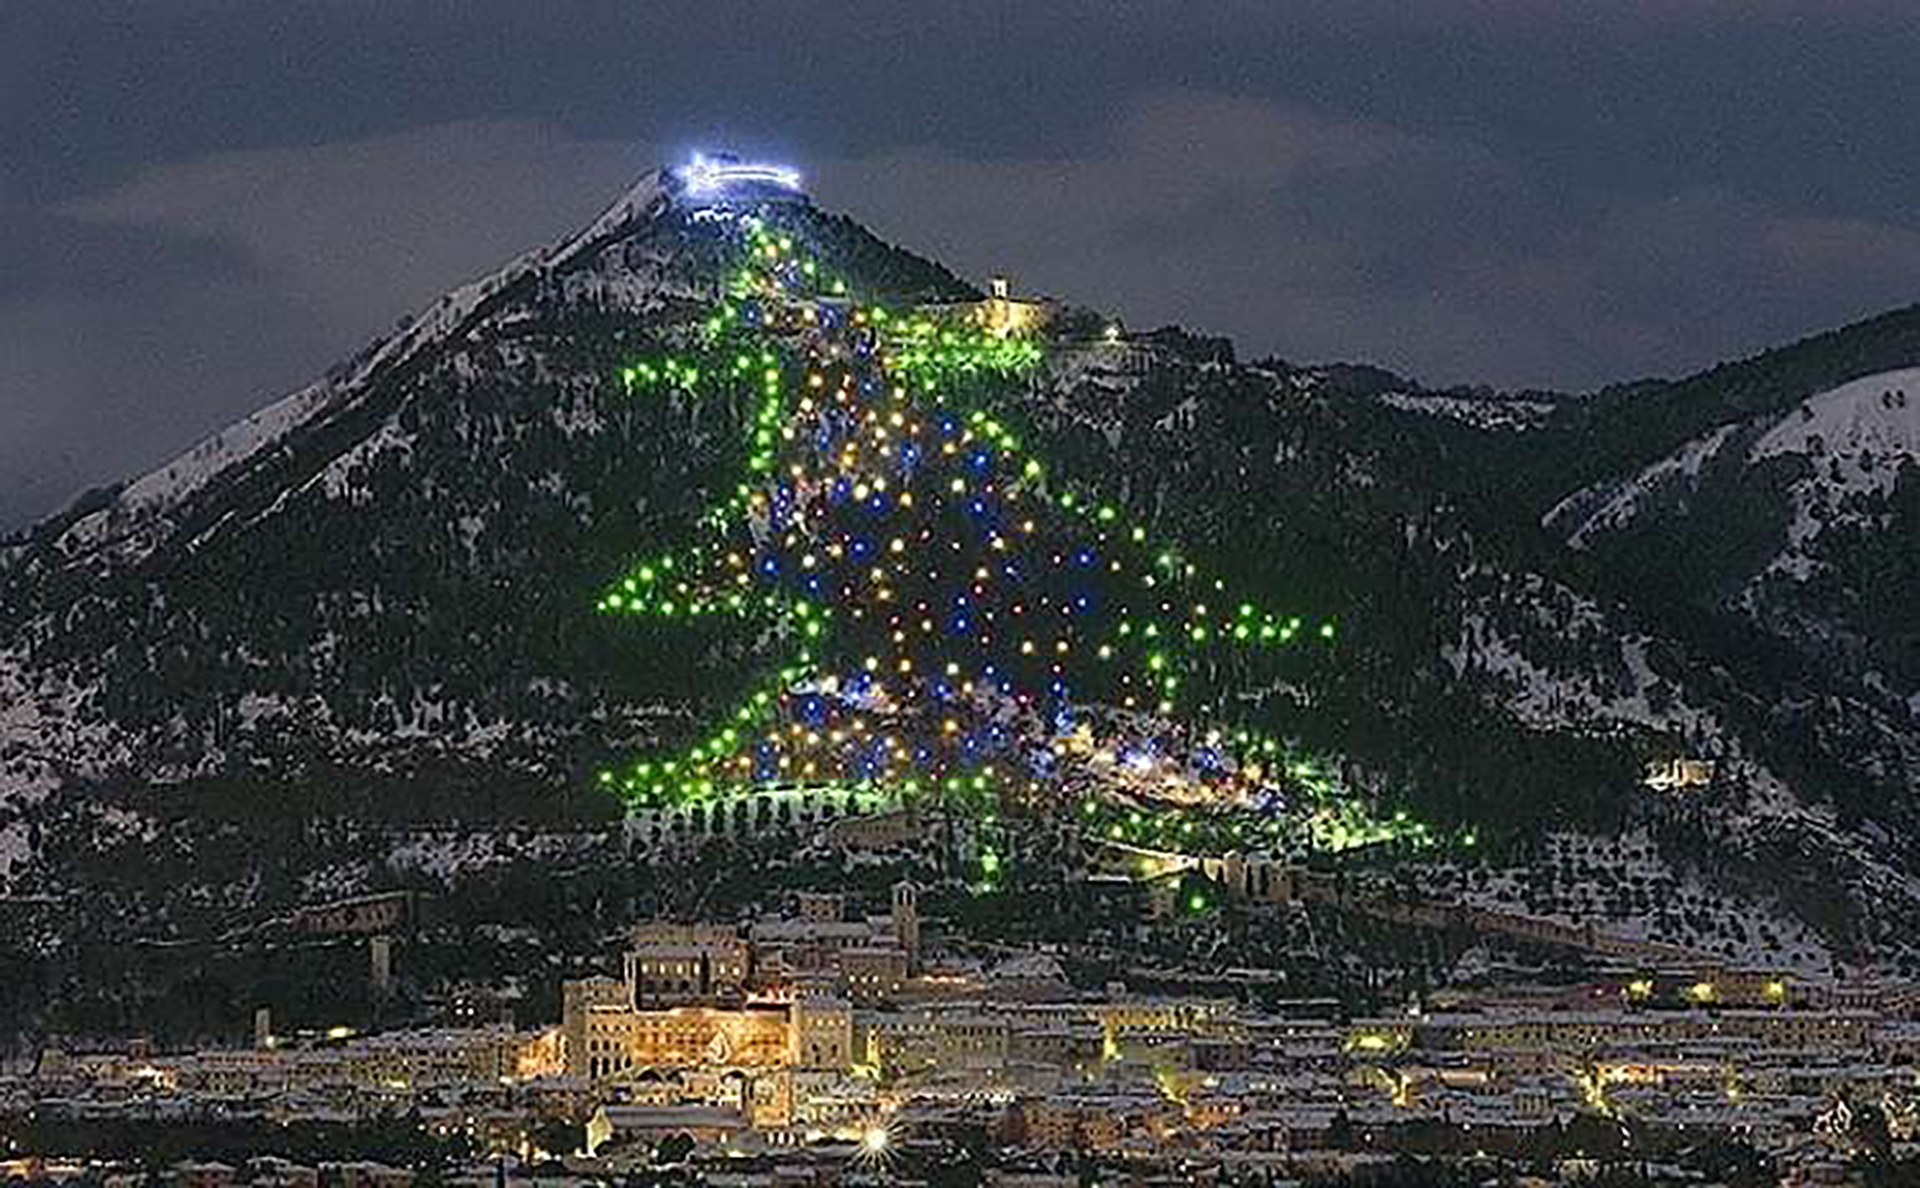 Entró en el Libro Guinness de los Récords como el árbol de Navidad más grande del mundo (Fuente: Oficina de turismo de Gubbio, Italia)